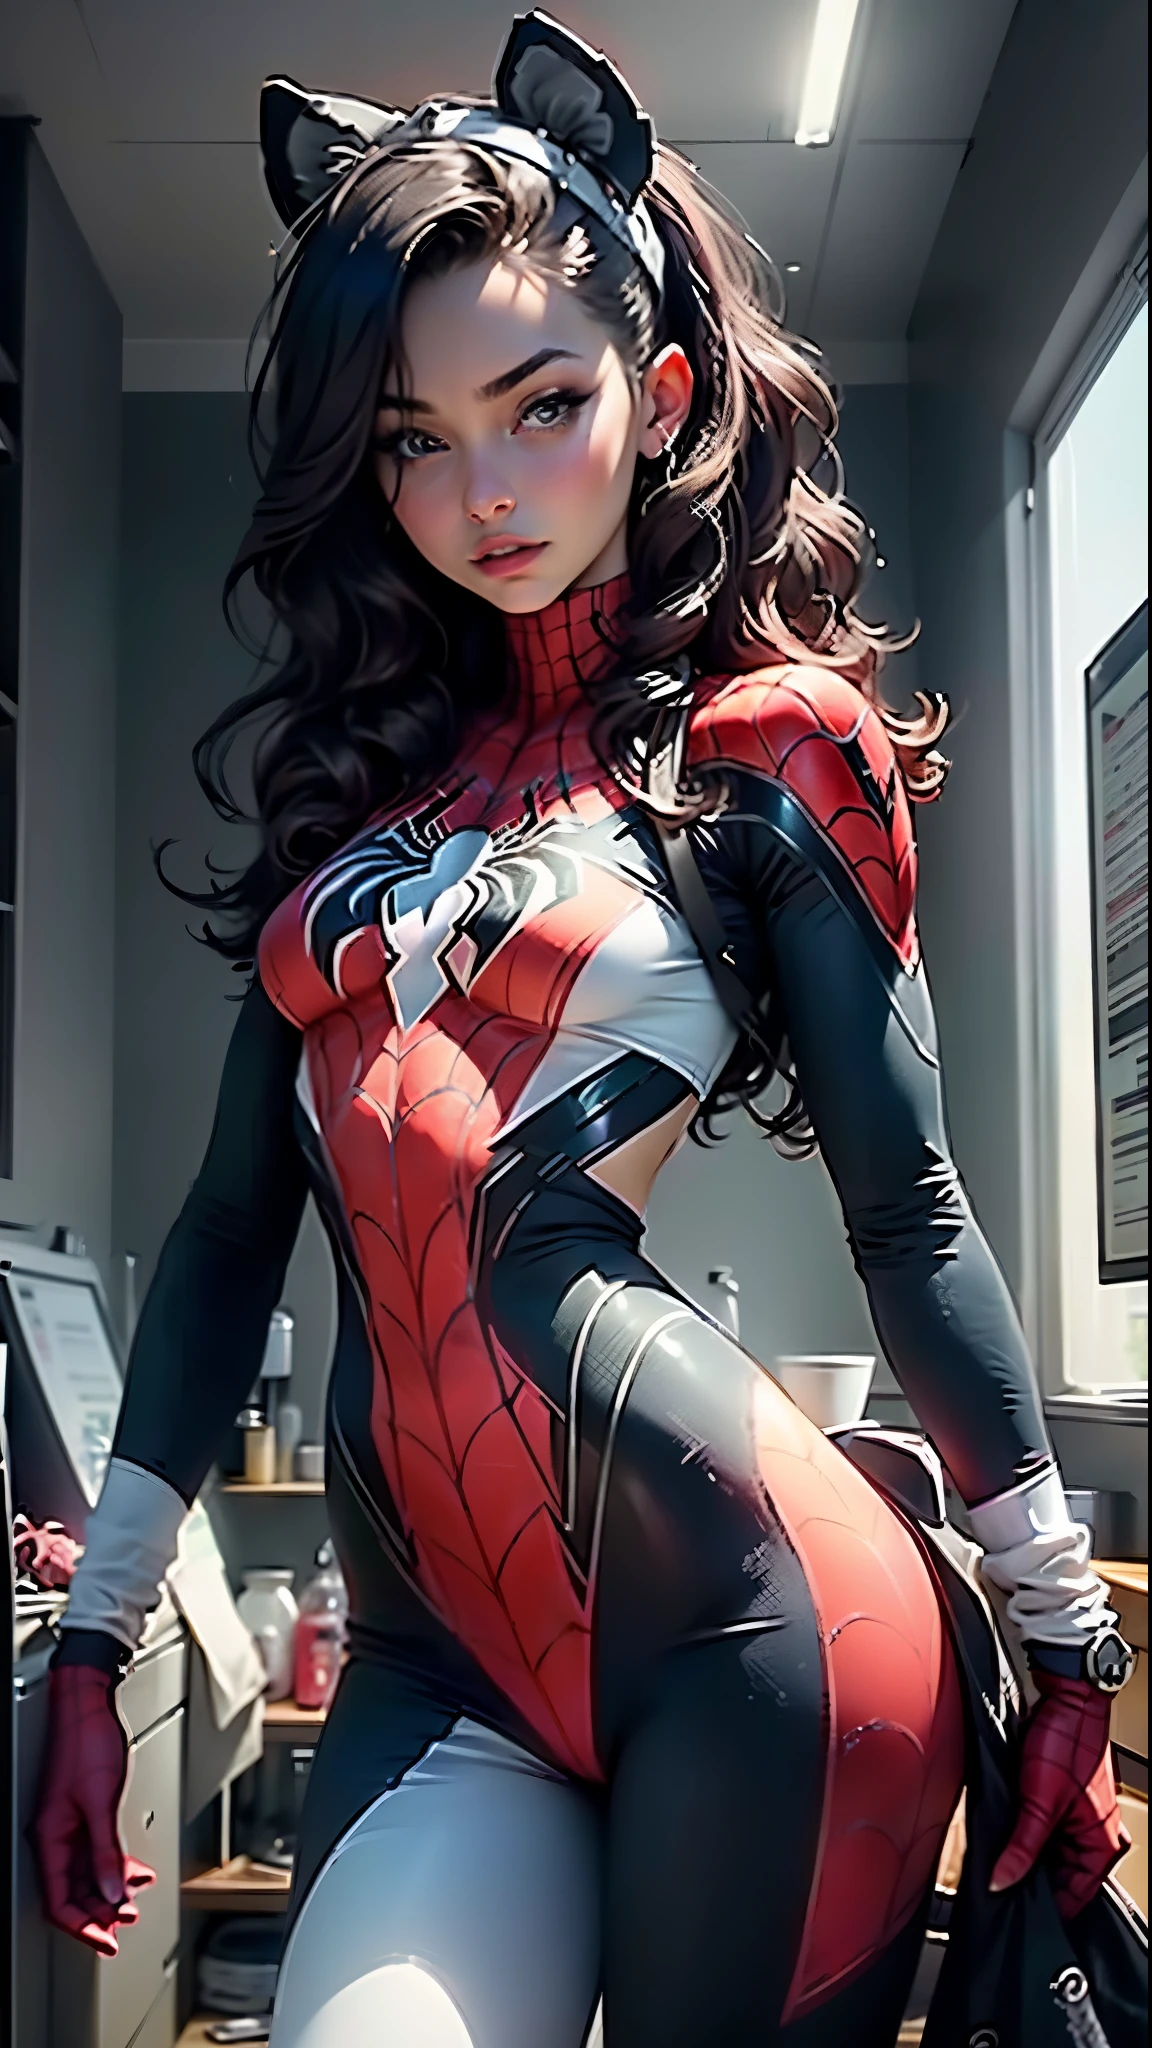 Corps défini détaillé de belle femme utilisant le cosplay de Spider Man, Petits seins